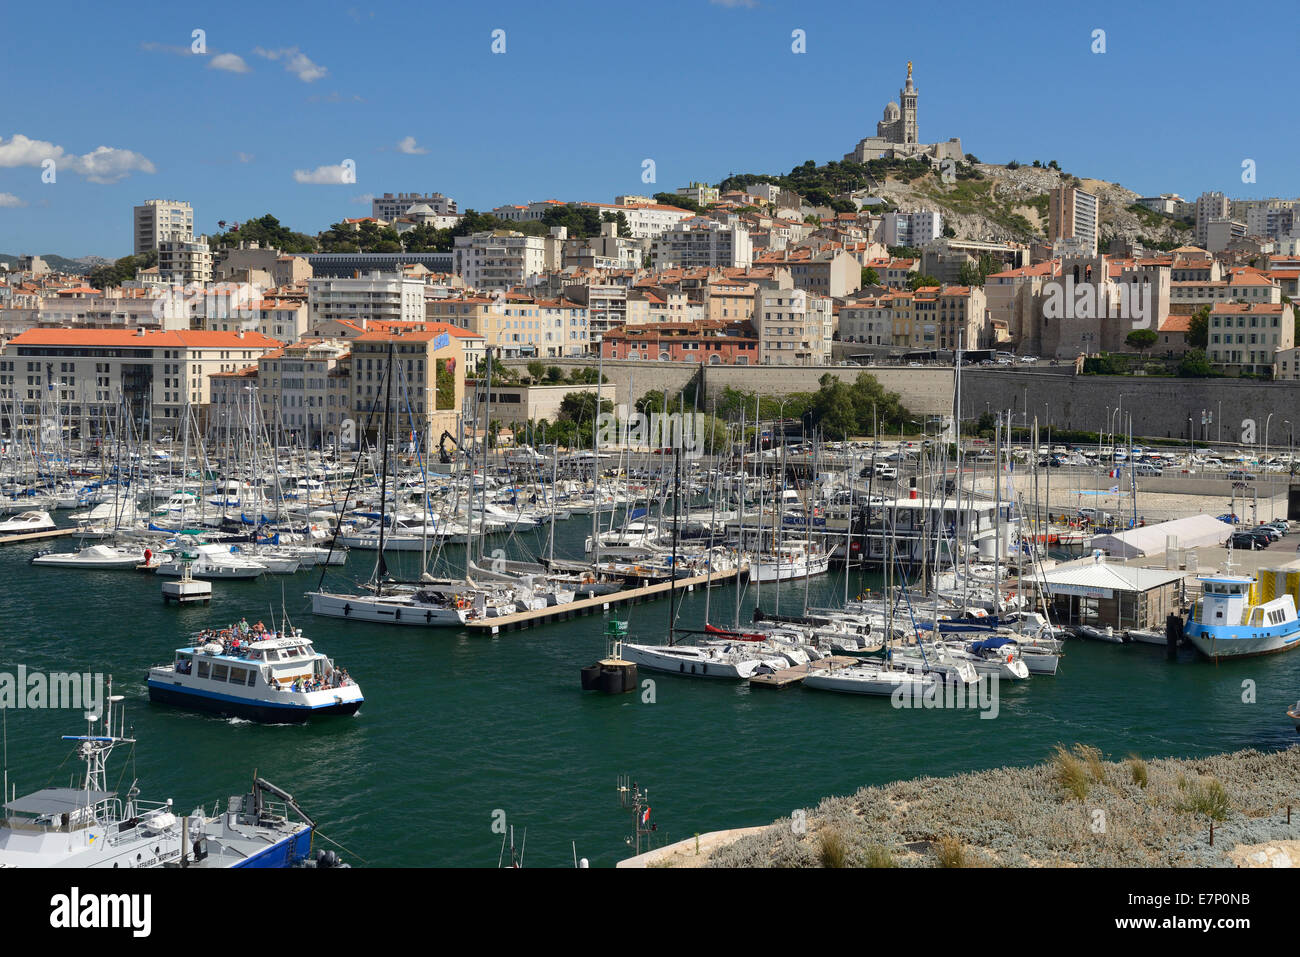 Europe, France, Provence-Alpes-Côte d'Azur, Provence, Marseille, Old Port, Basilica, Notre-Dame de la Garde, church, Stock Photo